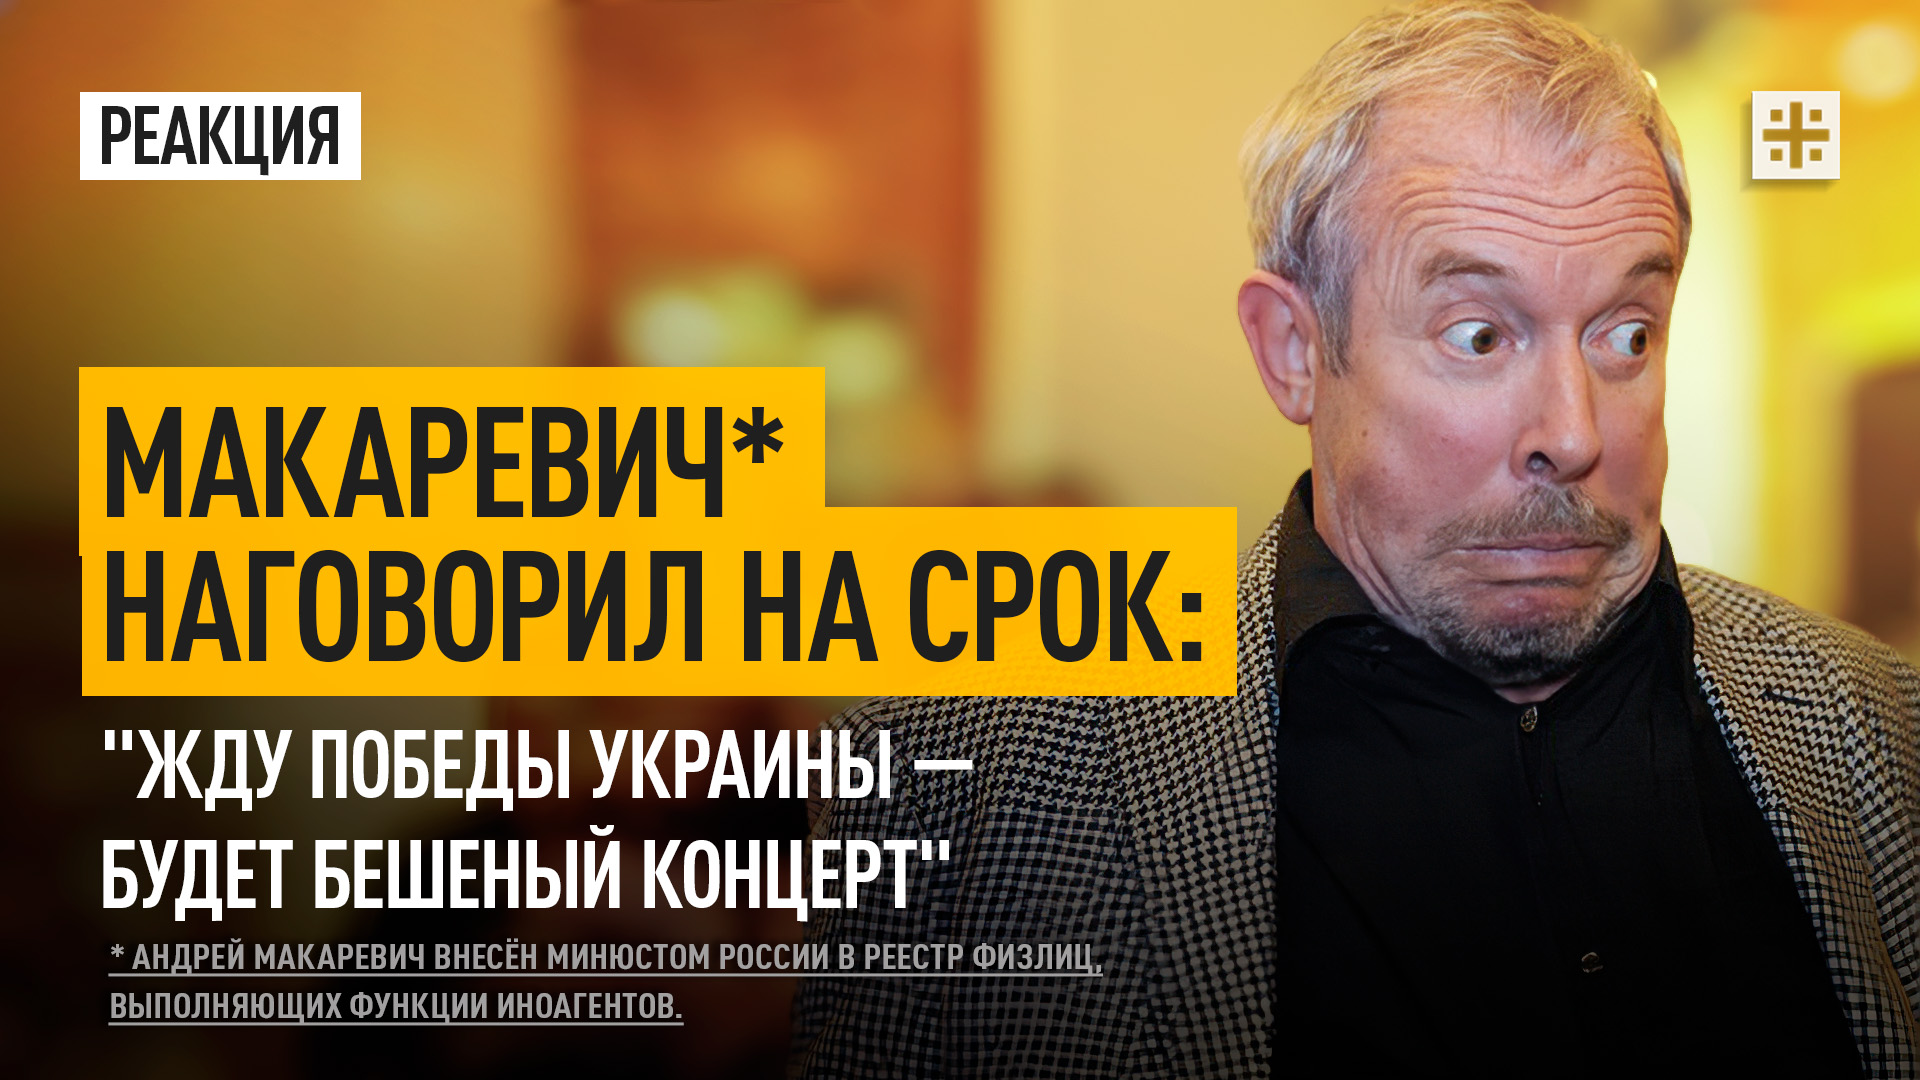 Макаревич* наговорил на срок: "Жду победы Украины — будет бешеный концерт"